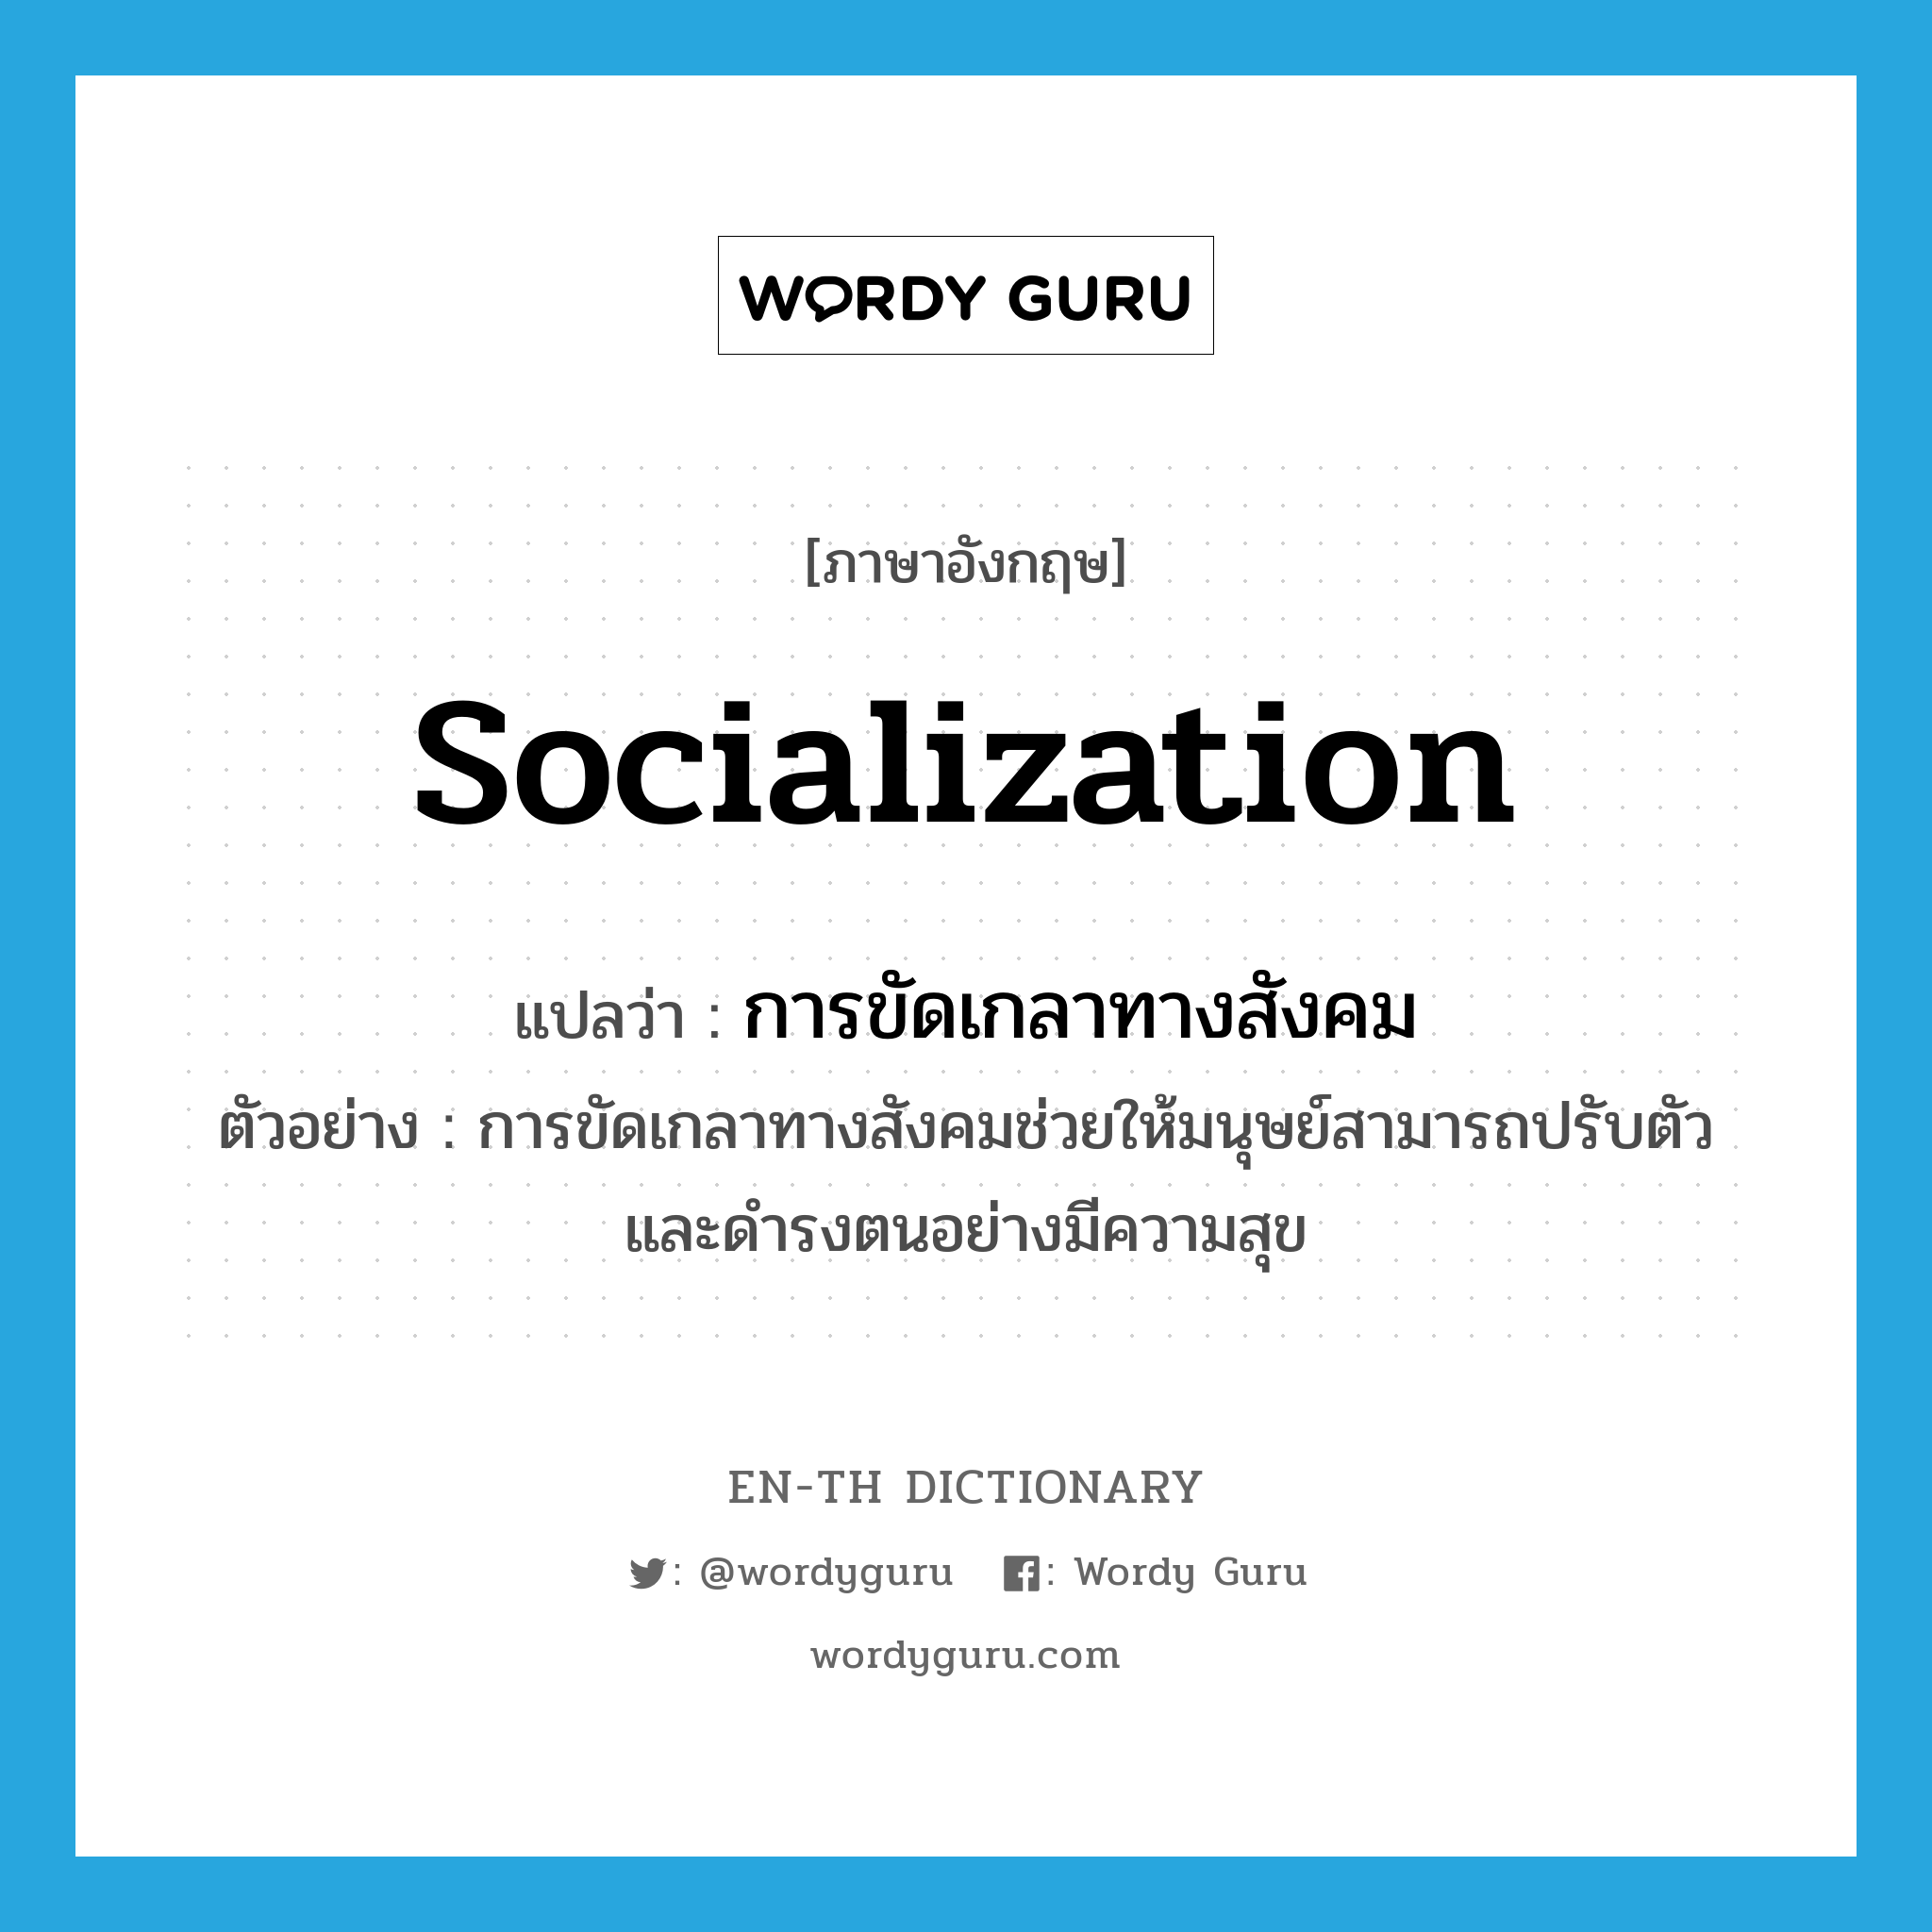 การขัดเกลาทางสังคม ภาษาอังกฤษ?, คำศัพท์ภาษาอังกฤษ การขัดเกลาทางสังคม แปลว่า socialization ประเภท N ตัวอย่าง การขัดเกลาทางสังคมช่วยให้มนุษย์สามารถปรับตัวและดำรงตนอย่างมีความสุข หมวด N